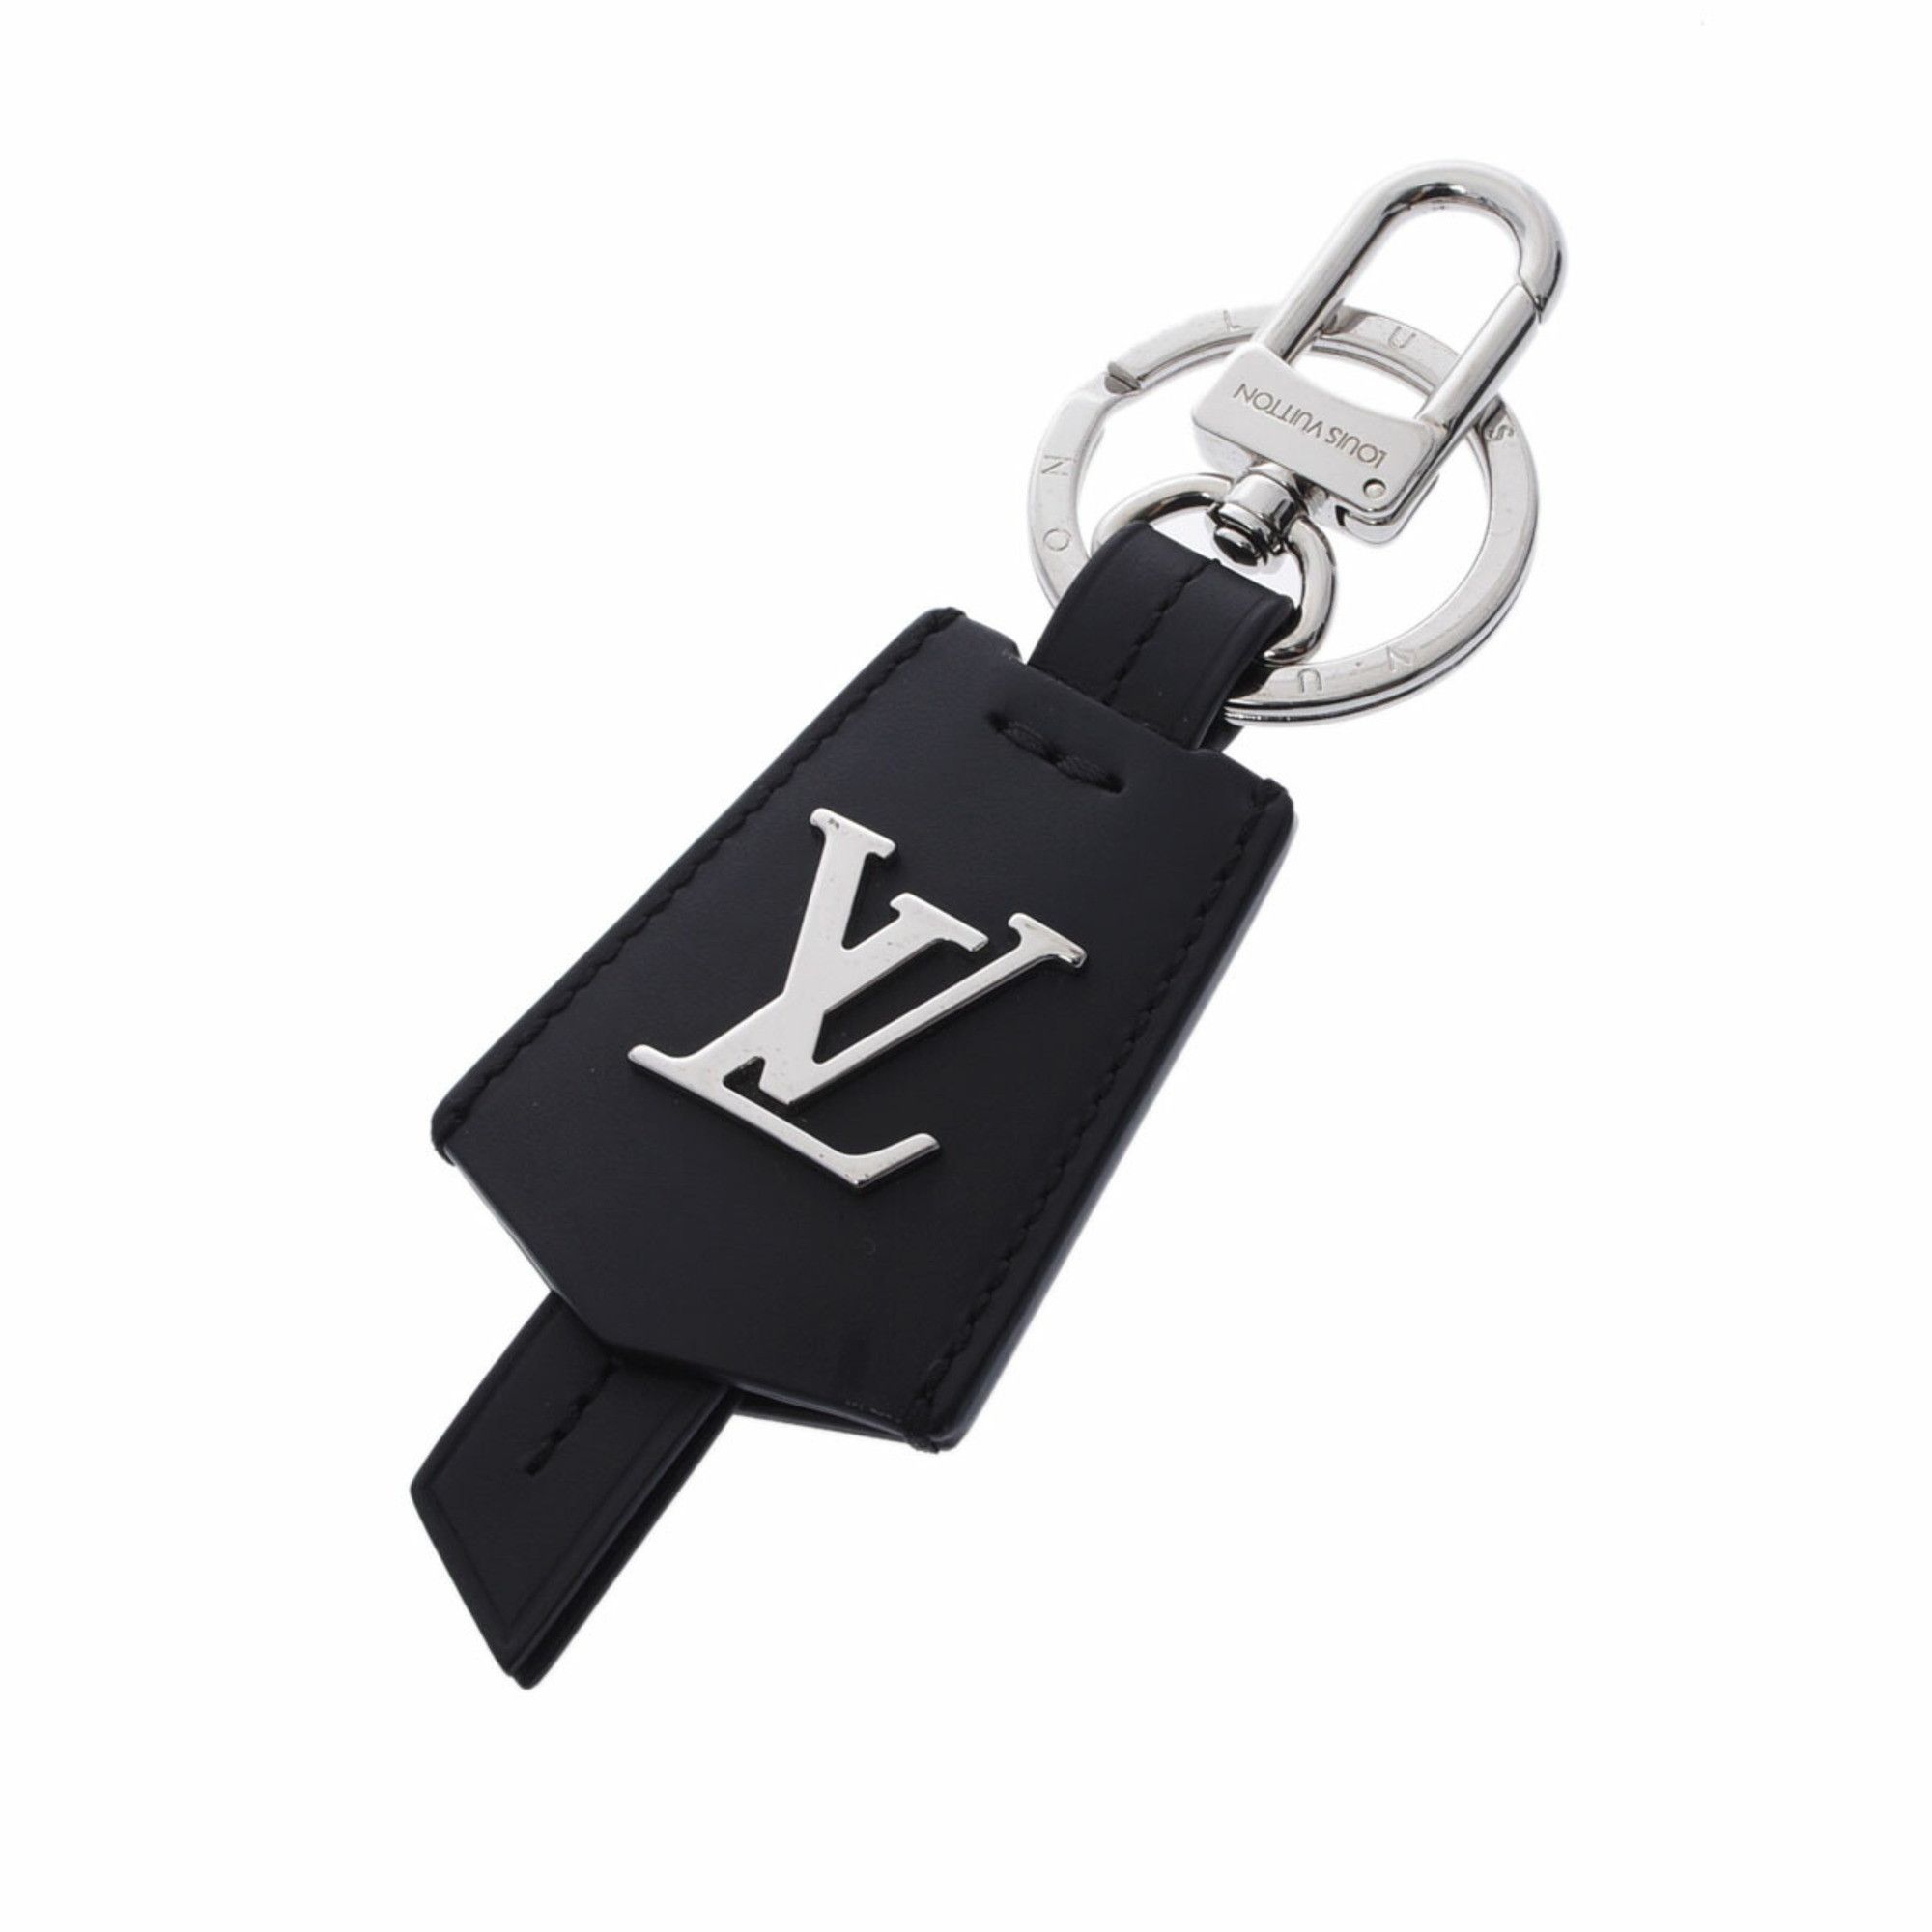 LOUIS VUITTON Bijoux Sac LV Prism Keychain holder M68678